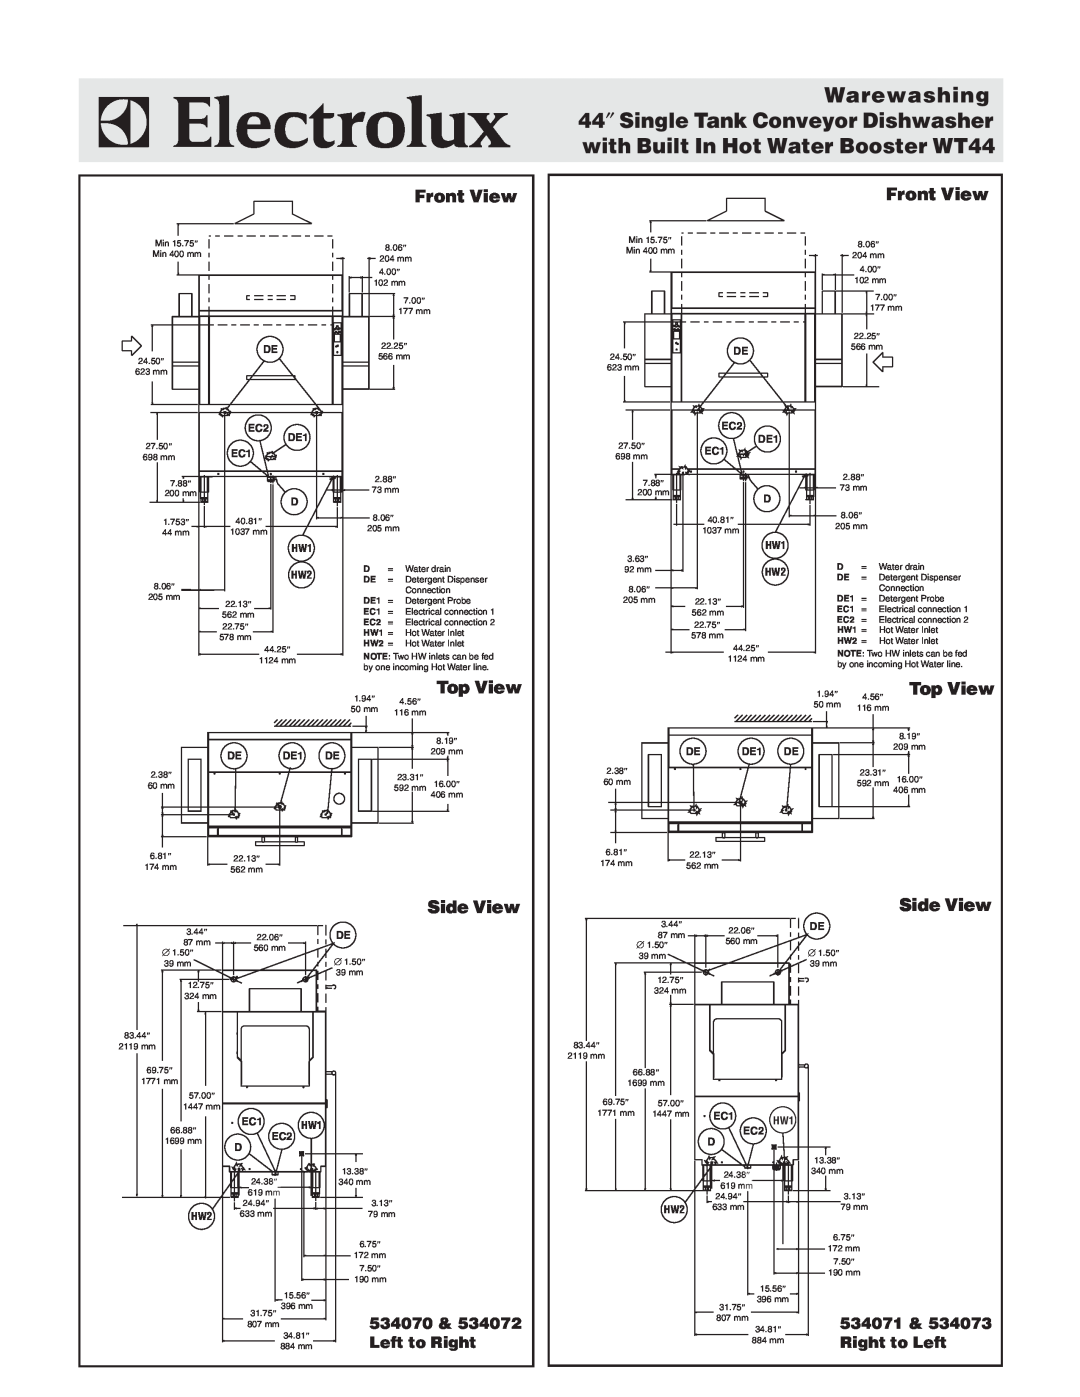 Electrolux WT44BL208 Front View, Top View, Side View, Warewashing 44″ Single Tank Conveyor Dishwasher, HW1 HW2, DE1 DE 